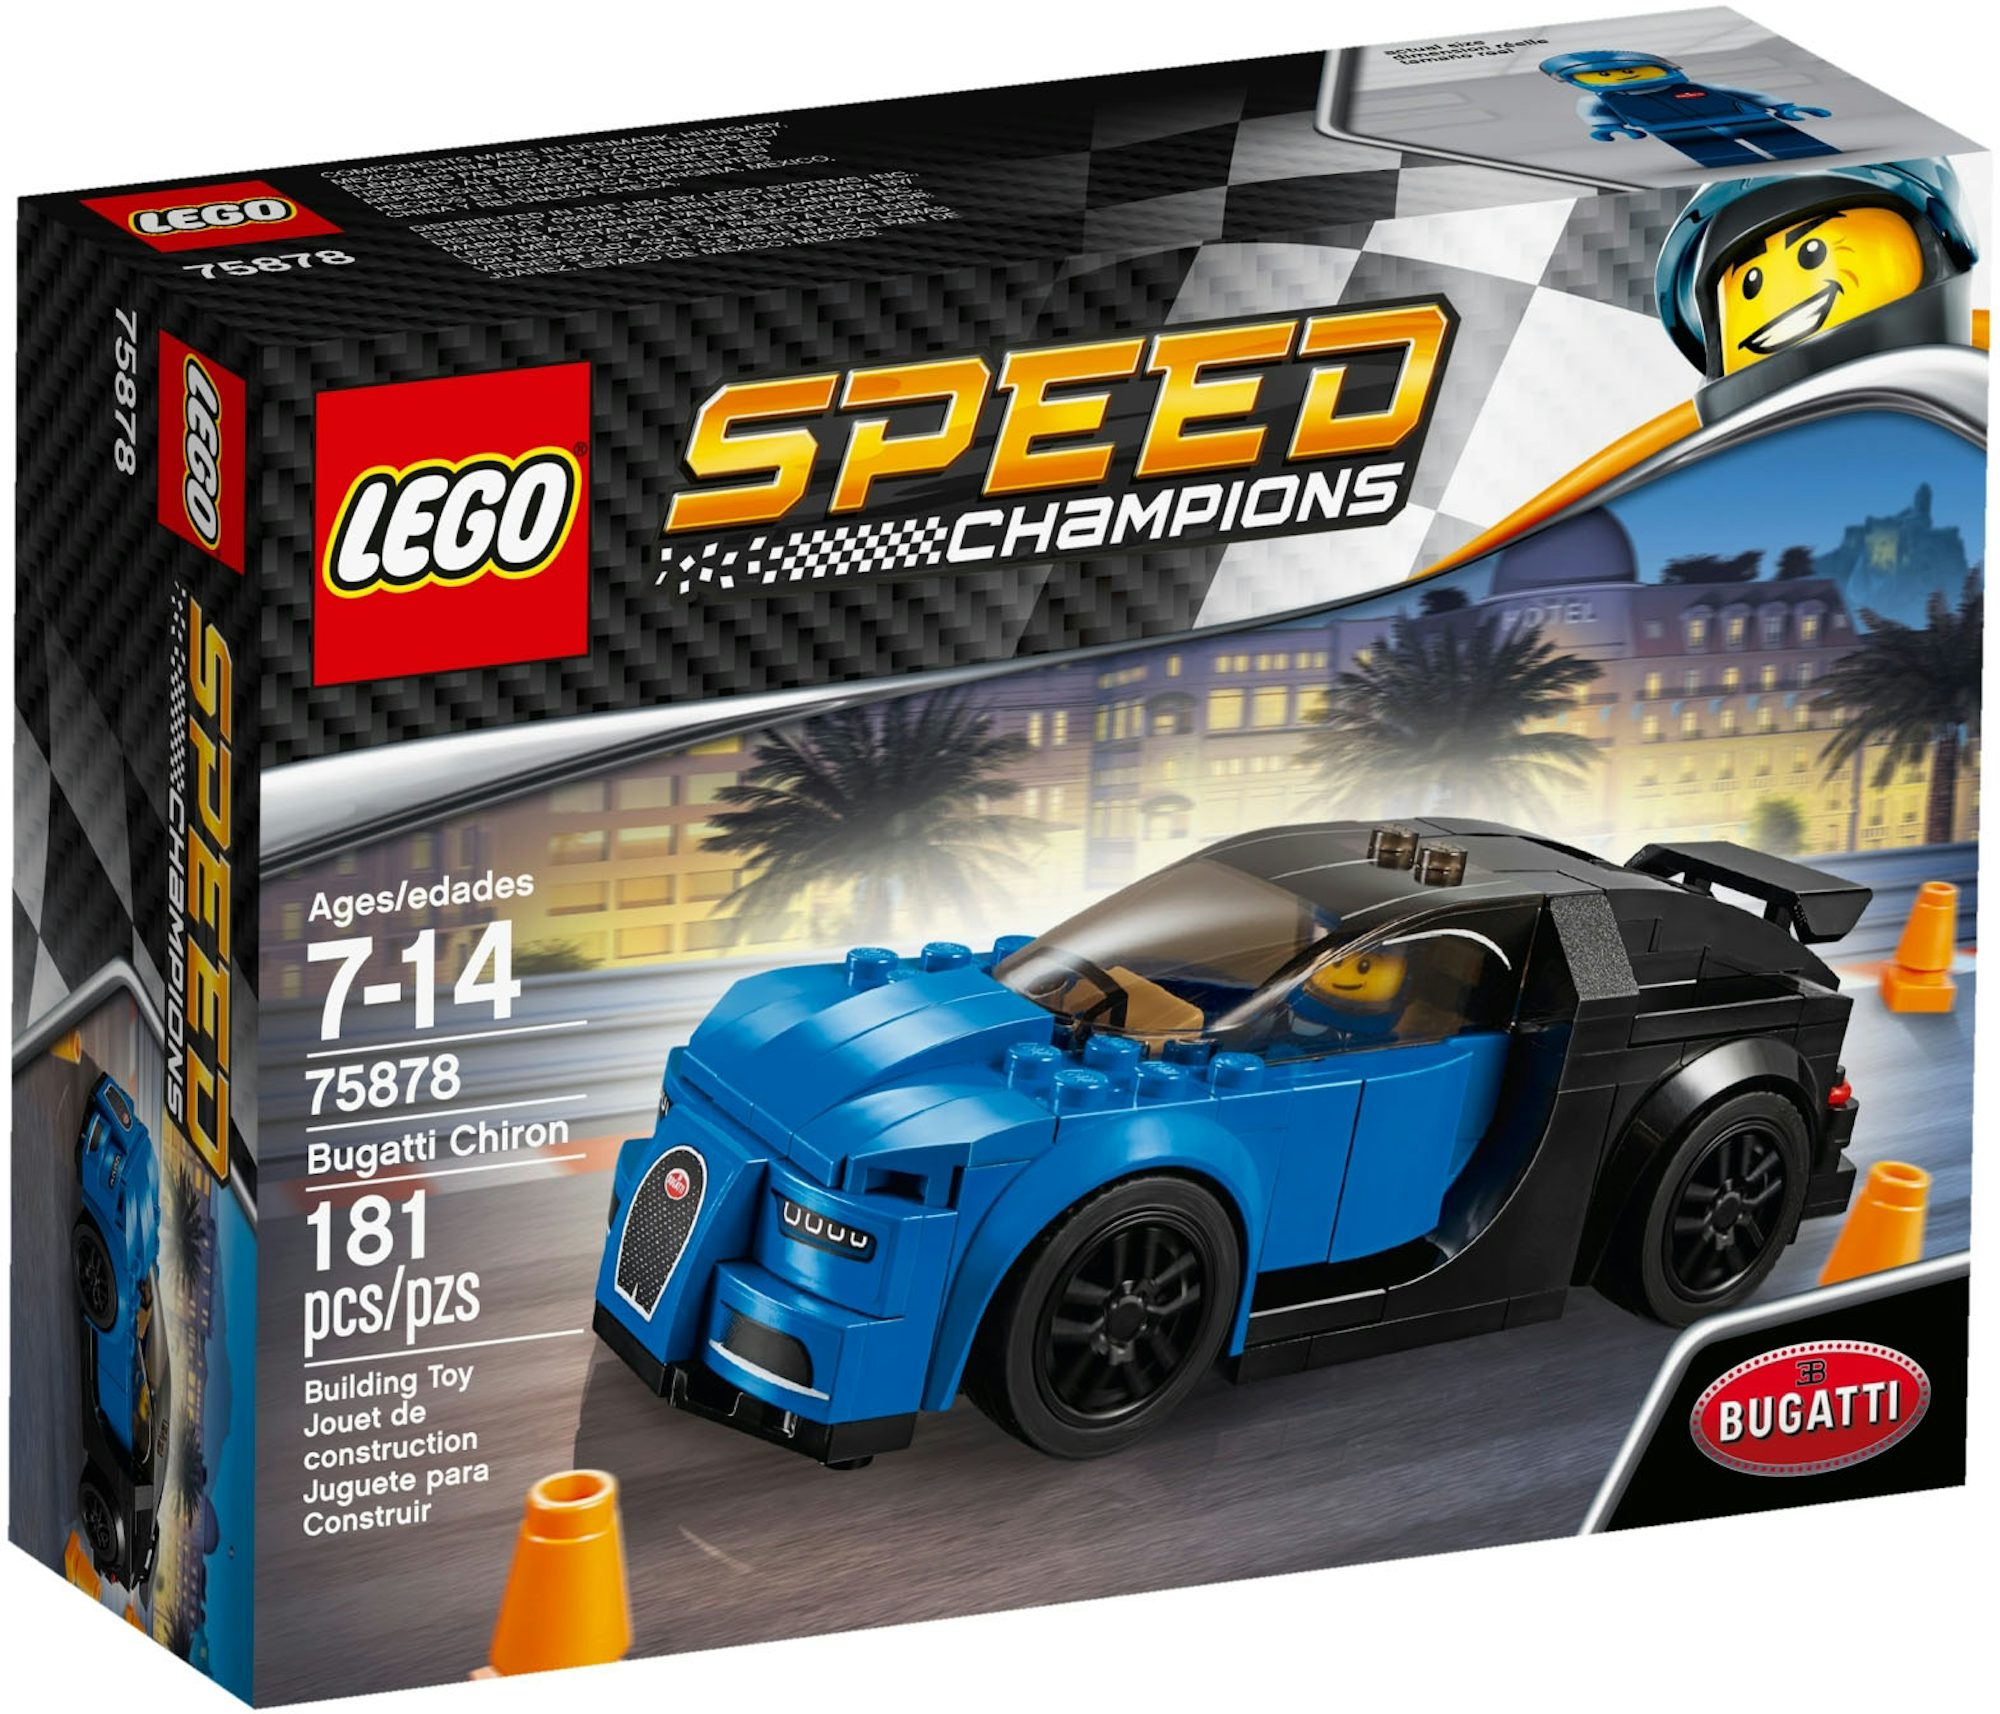 LEGO Speed Champions Bugatti Chiron Set 75878 - US